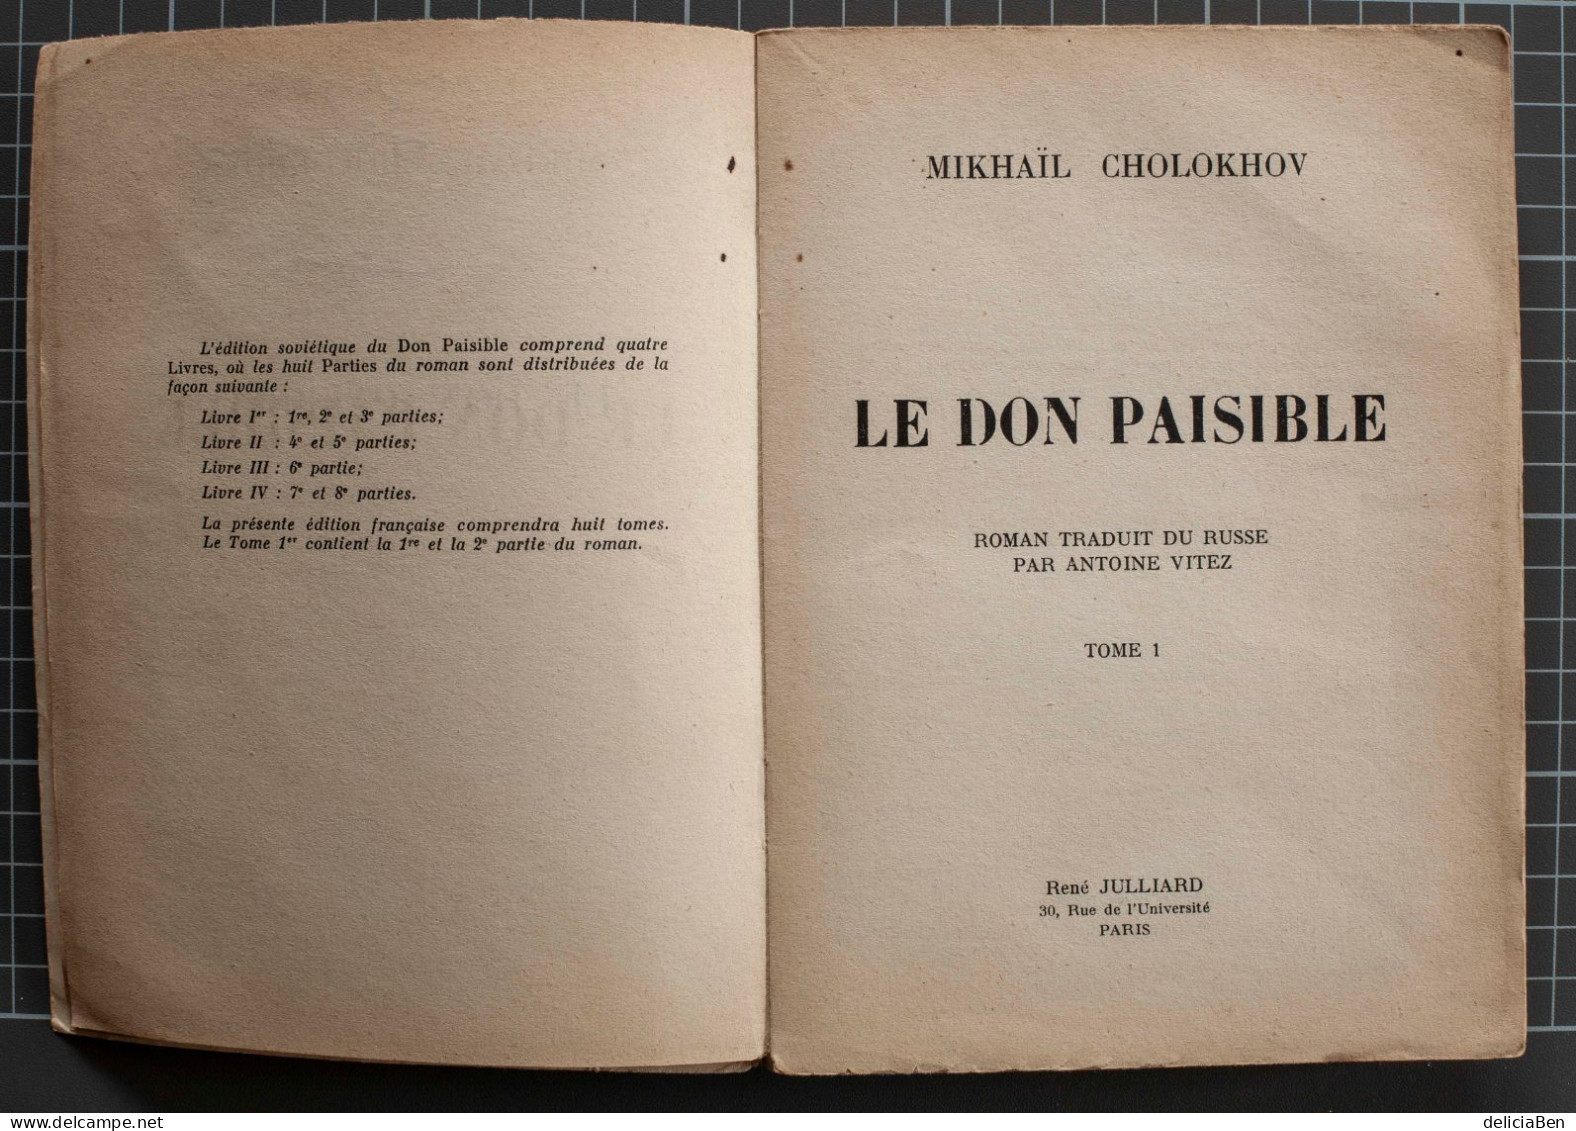 Mikhaïl Cholokhov. Le Don Paisible Roman Traduit Du Russe Et Dédicacé Par Antoine Vitez. 1959 - Livres Dédicacés